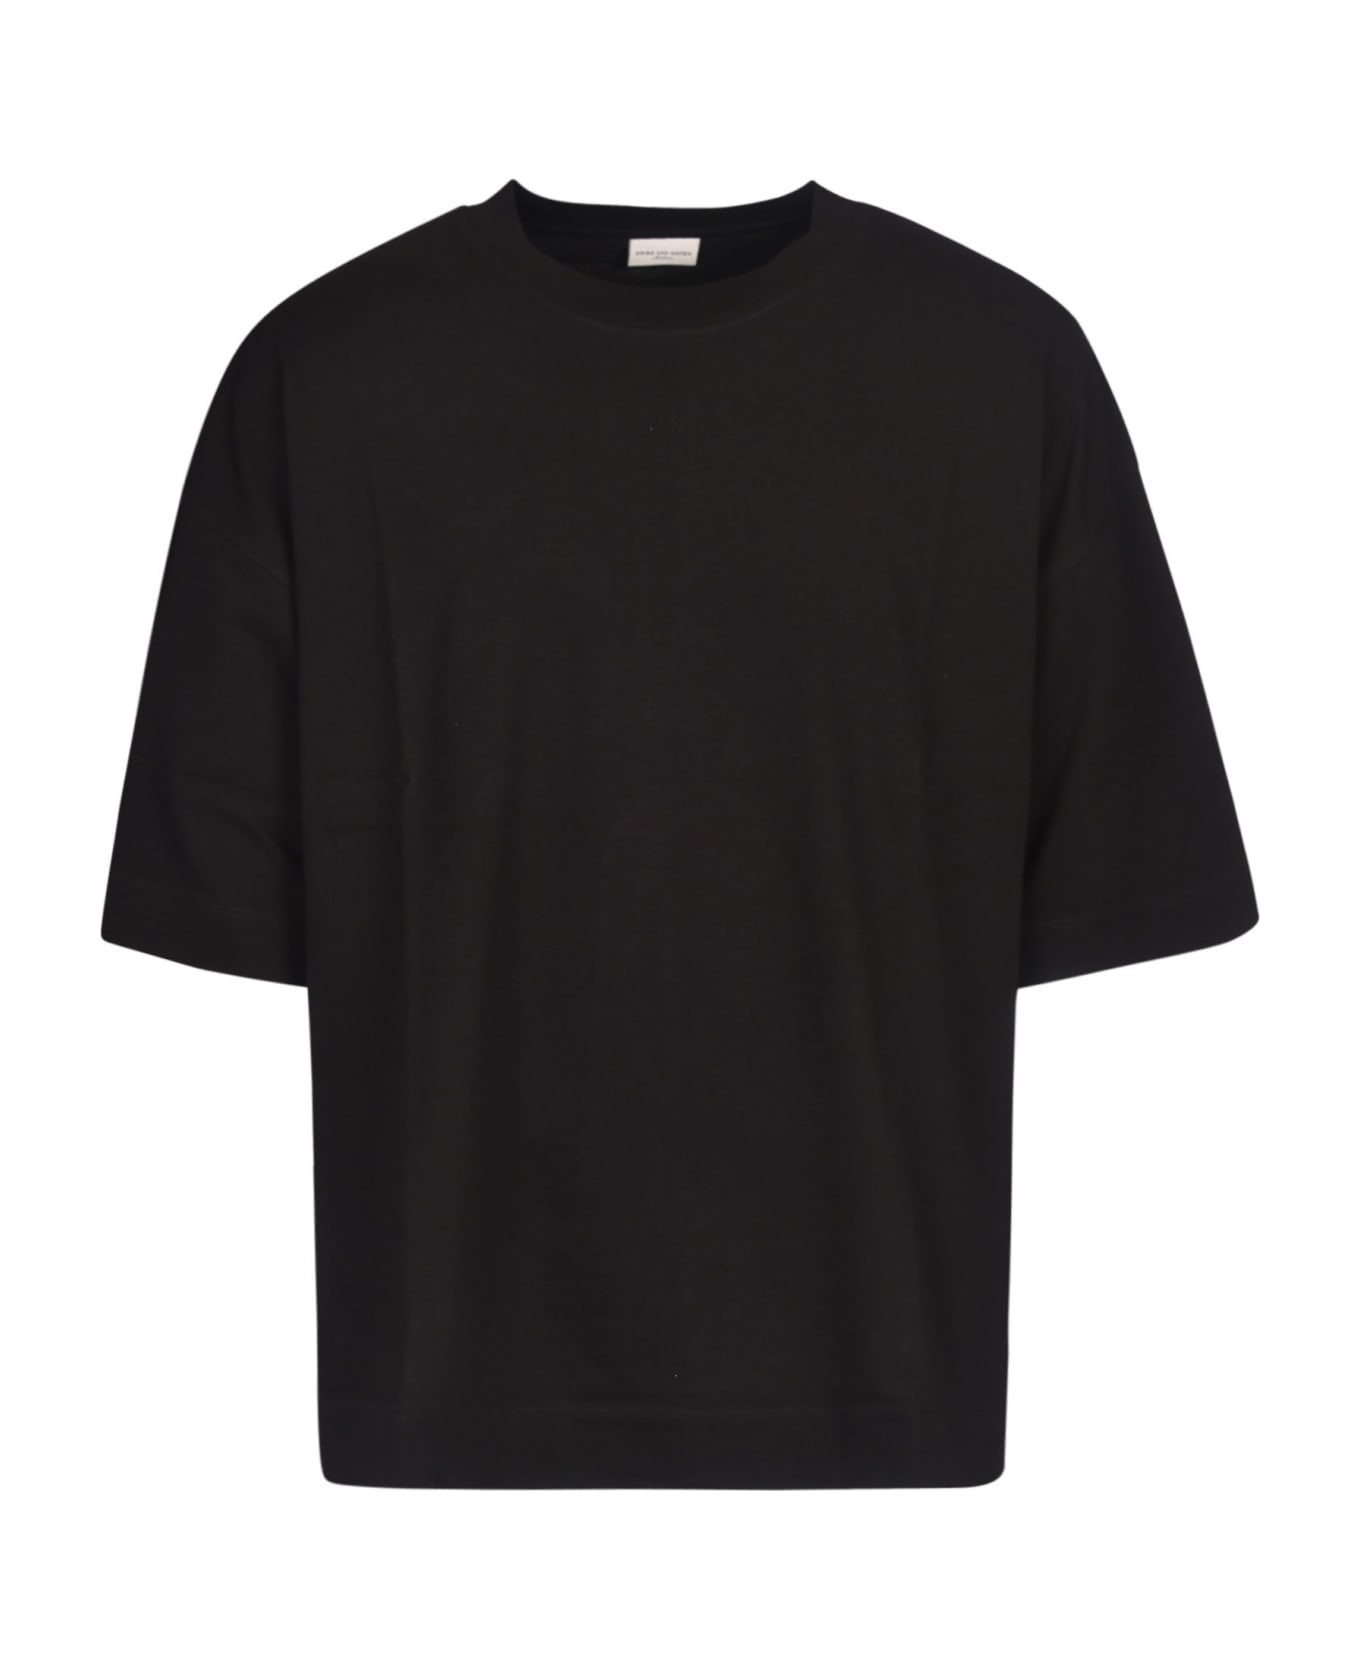 Dries Van Noten M.k.t. T-shirt - Black シャツ